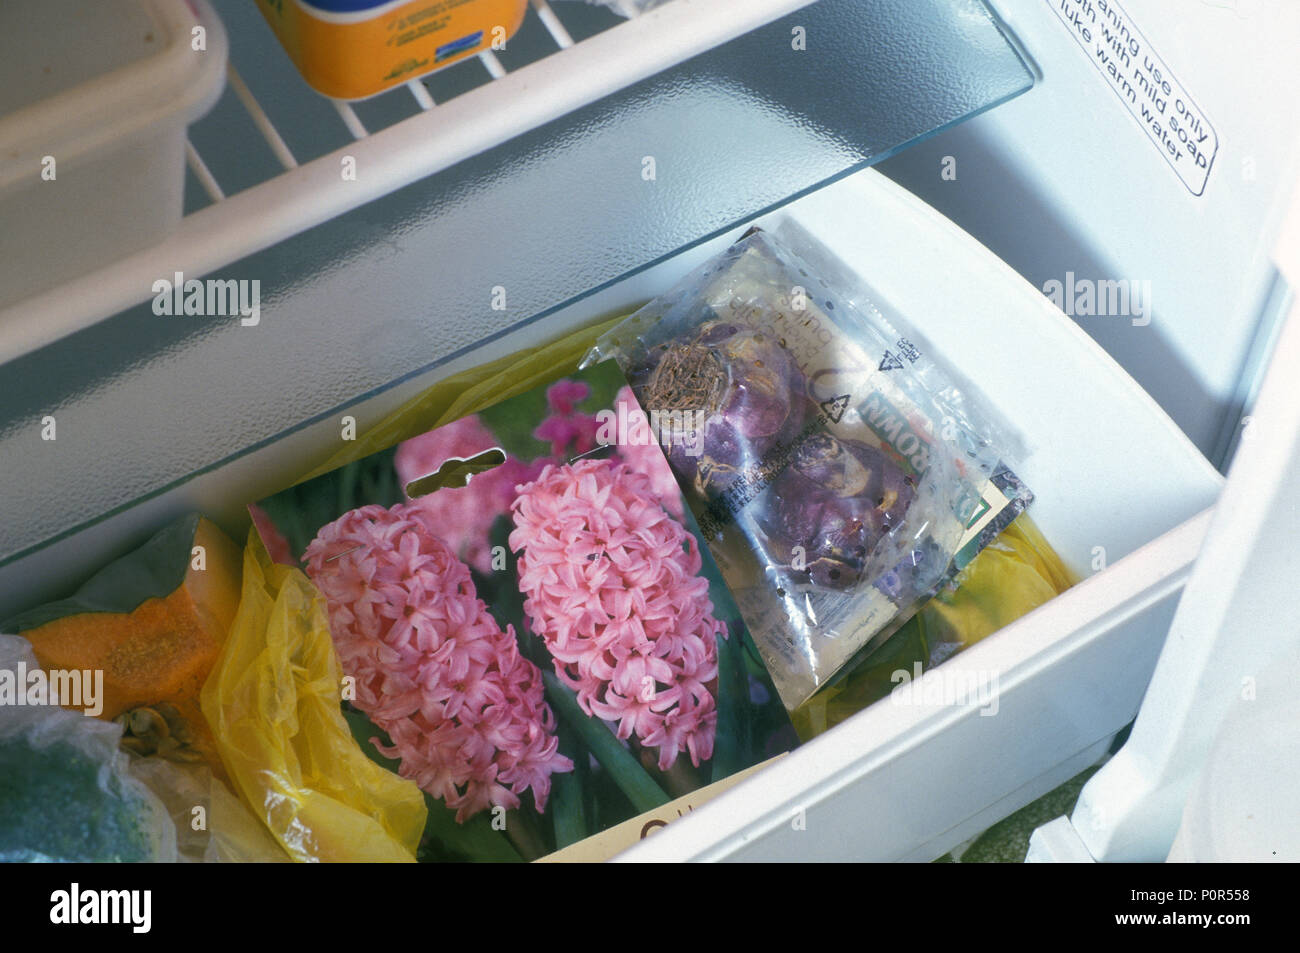 La memorizzazione di BULBI DI GIACINTO NEL CASSETTO CRISPER di frigo. Prima di piantare giacinti metterli in crisper parte del frigorifero. Foto Stock